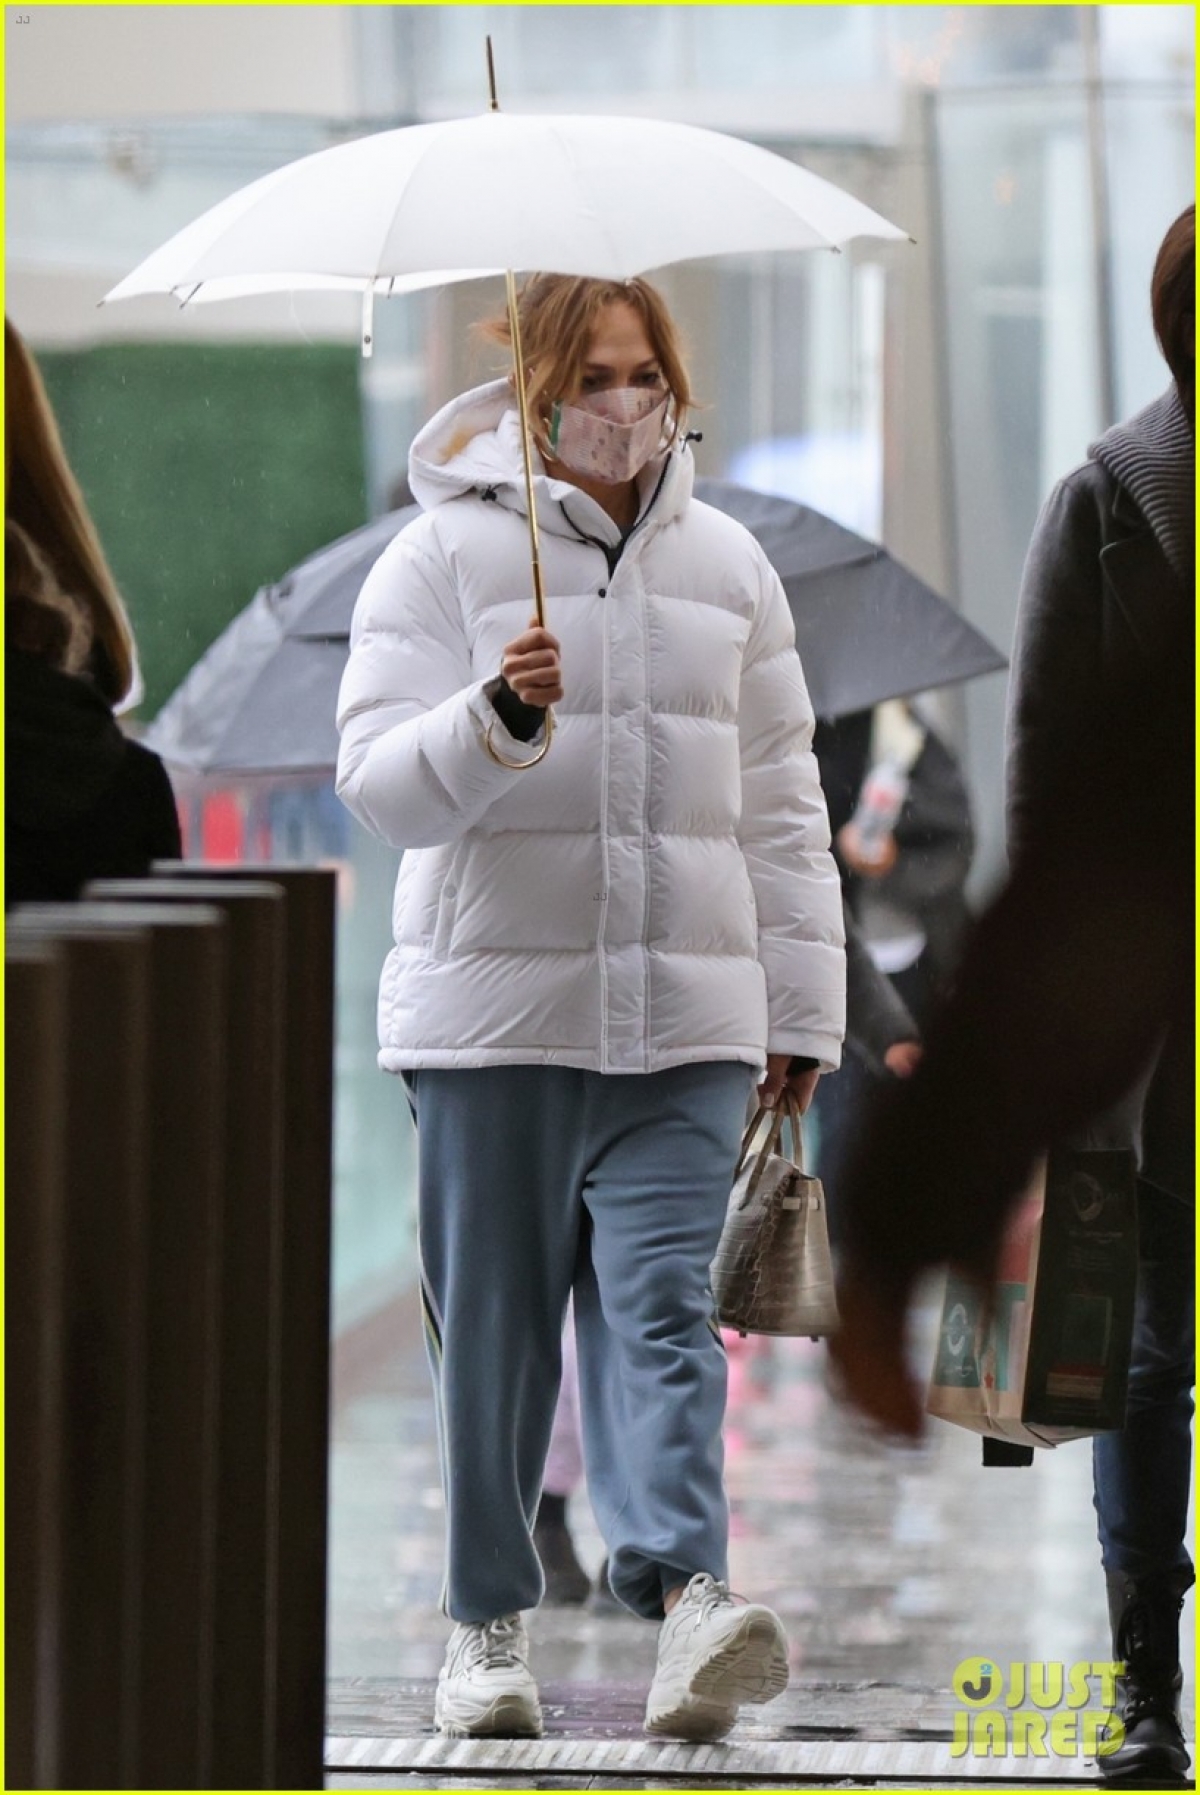 Hình ảnh để mặt mộc, đi mua sắm dưới trời mưa lạnh của Jennifer Lopez đã thu hút được sự quan tâm, chú ý của dư luận